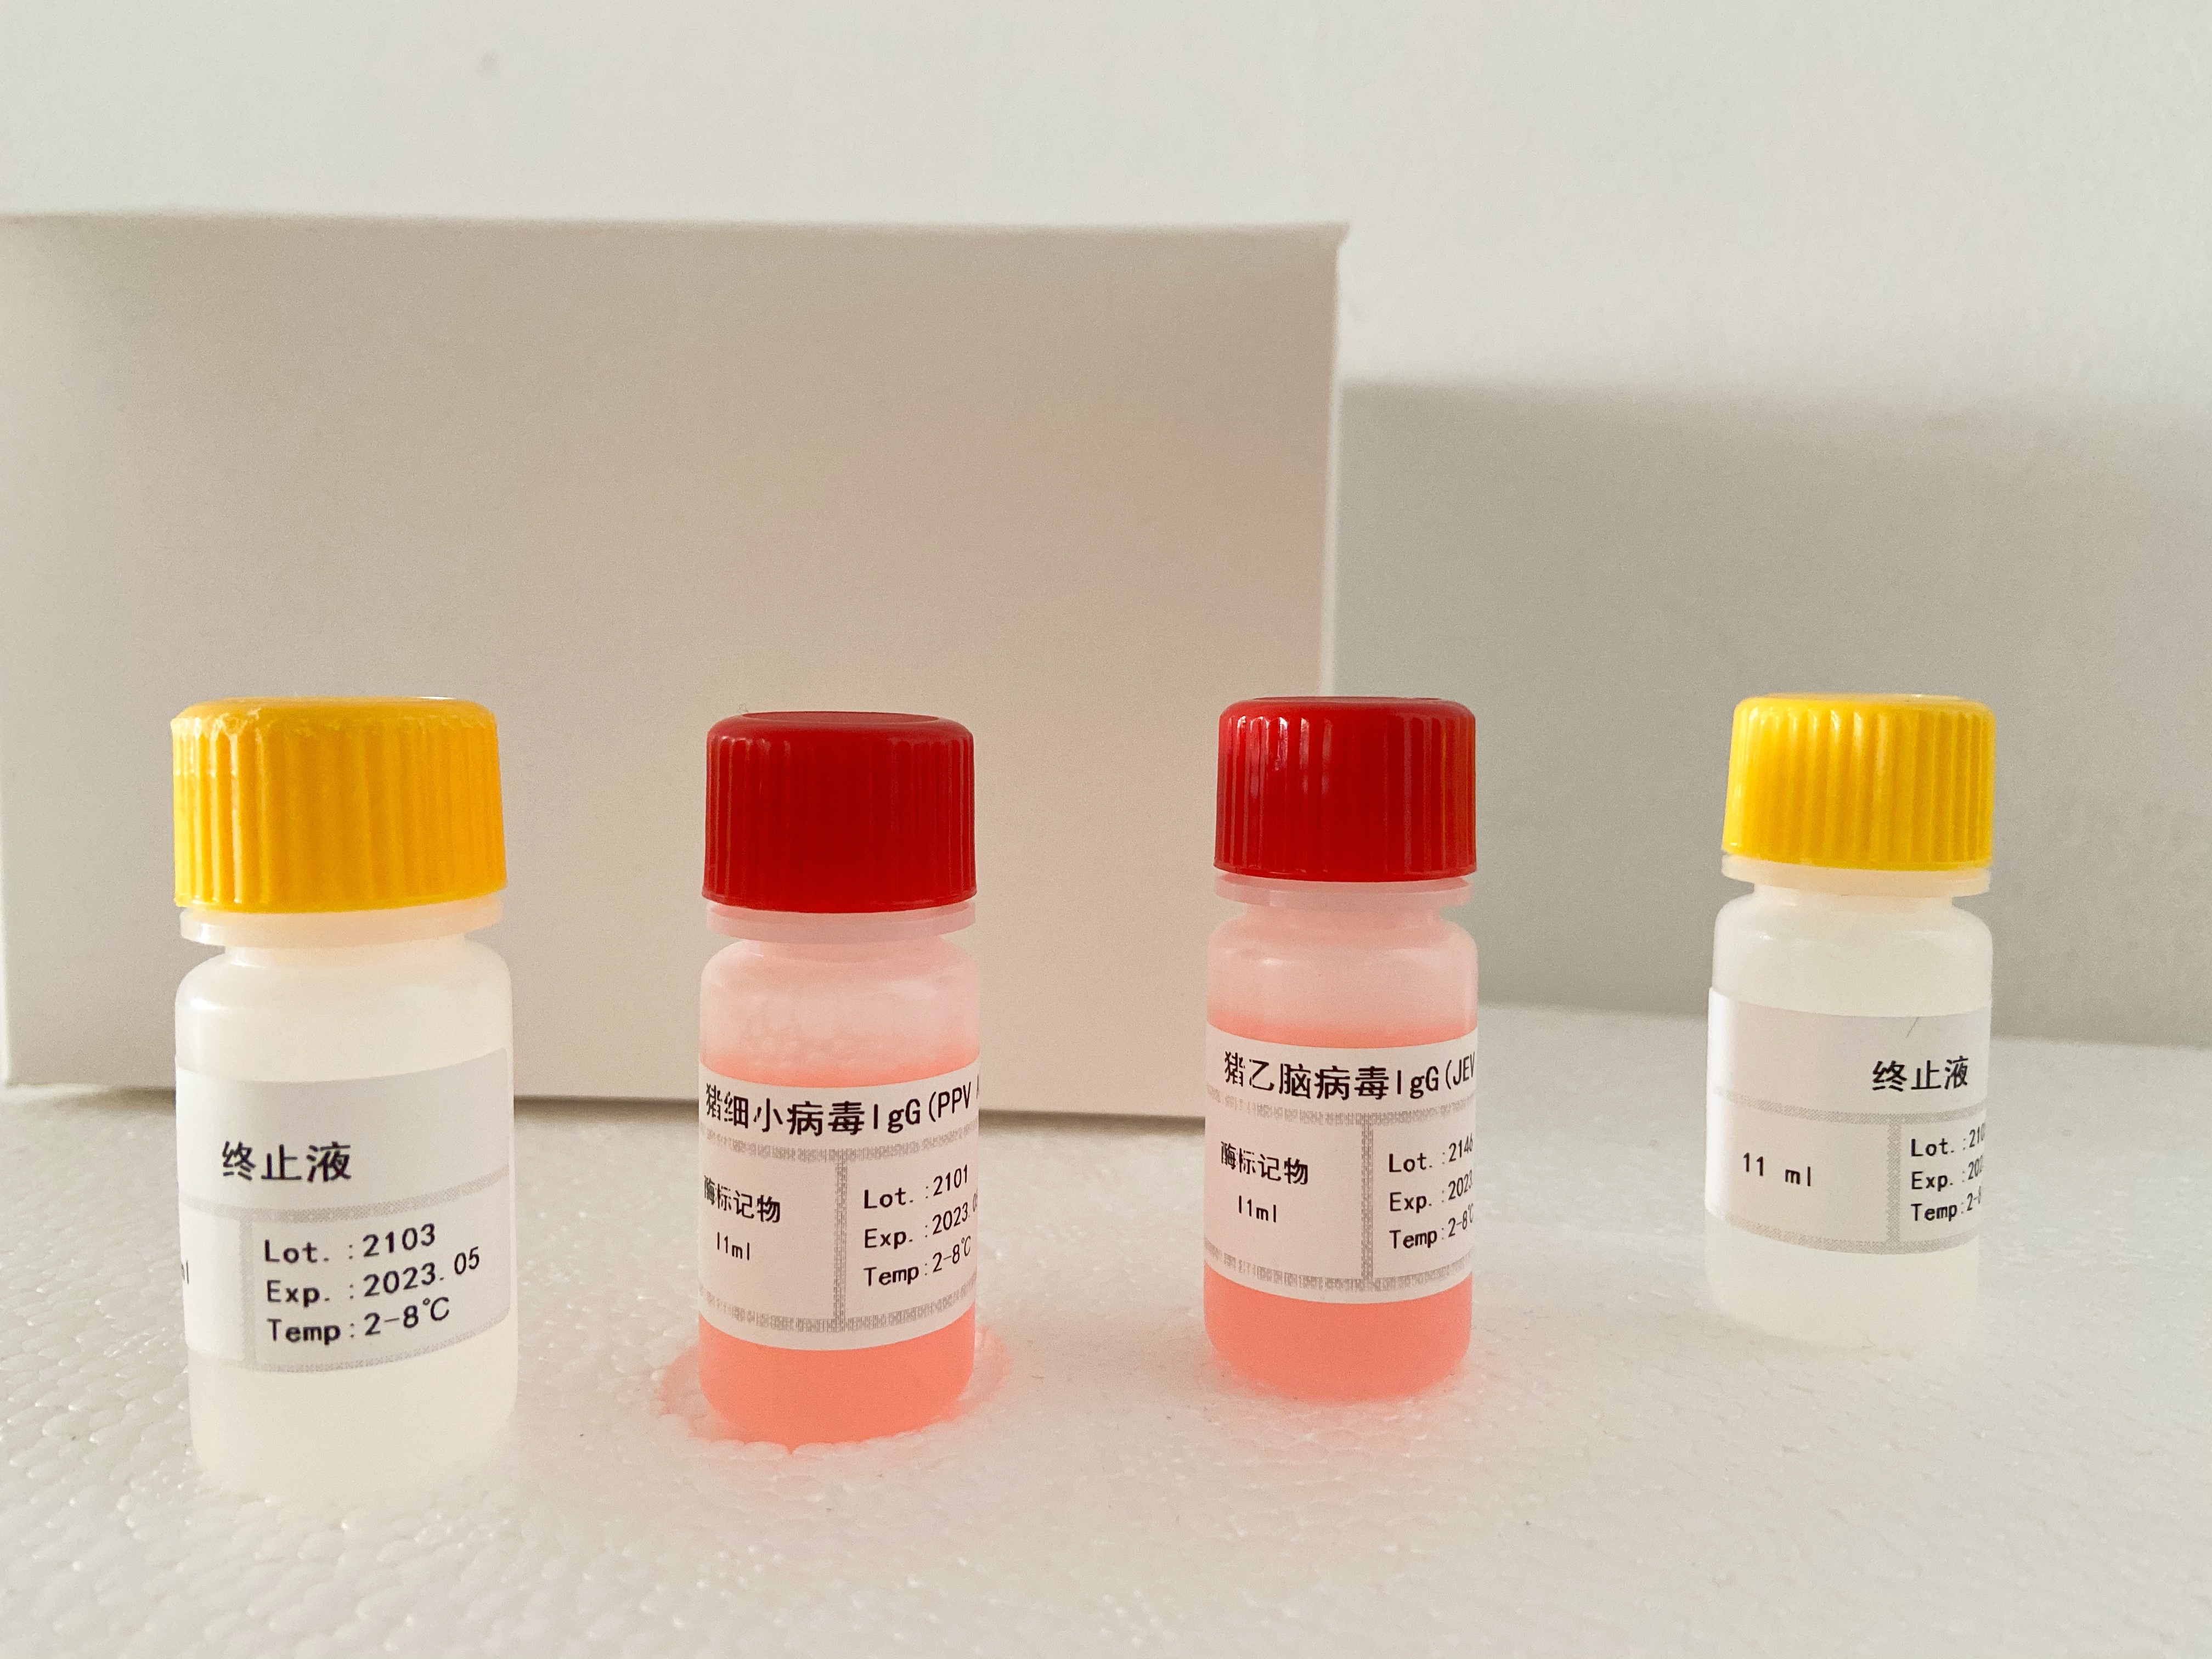 猪睾酮(T)检测试剂盒